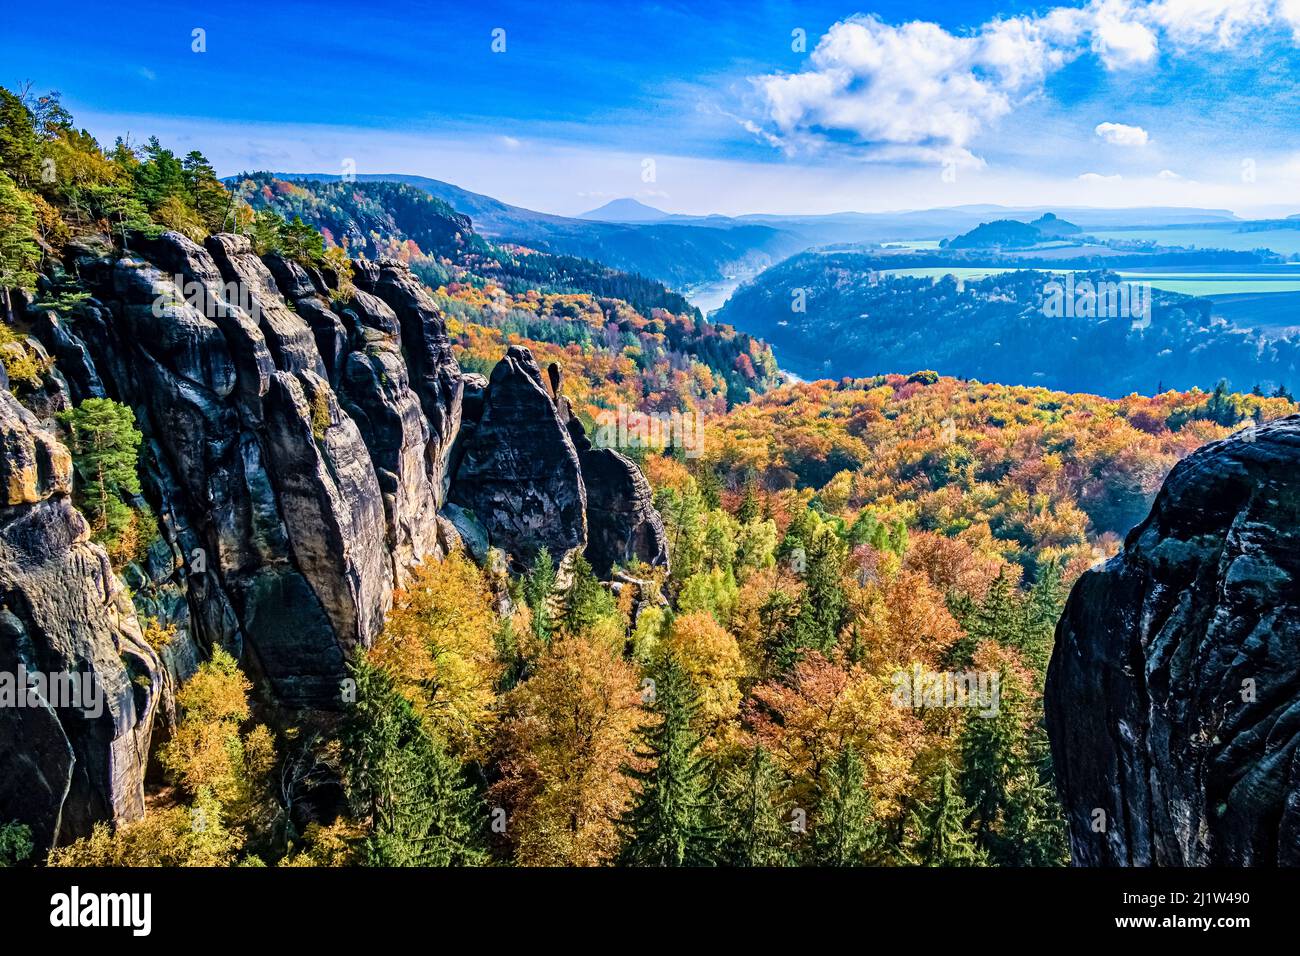 Paisaje con formaciones rocosas, coloridos árboles y el valle del Elba en la zona de Schrammsteine del Parque Nacional de la Suiza Sajonia en otoño. Foto de stock